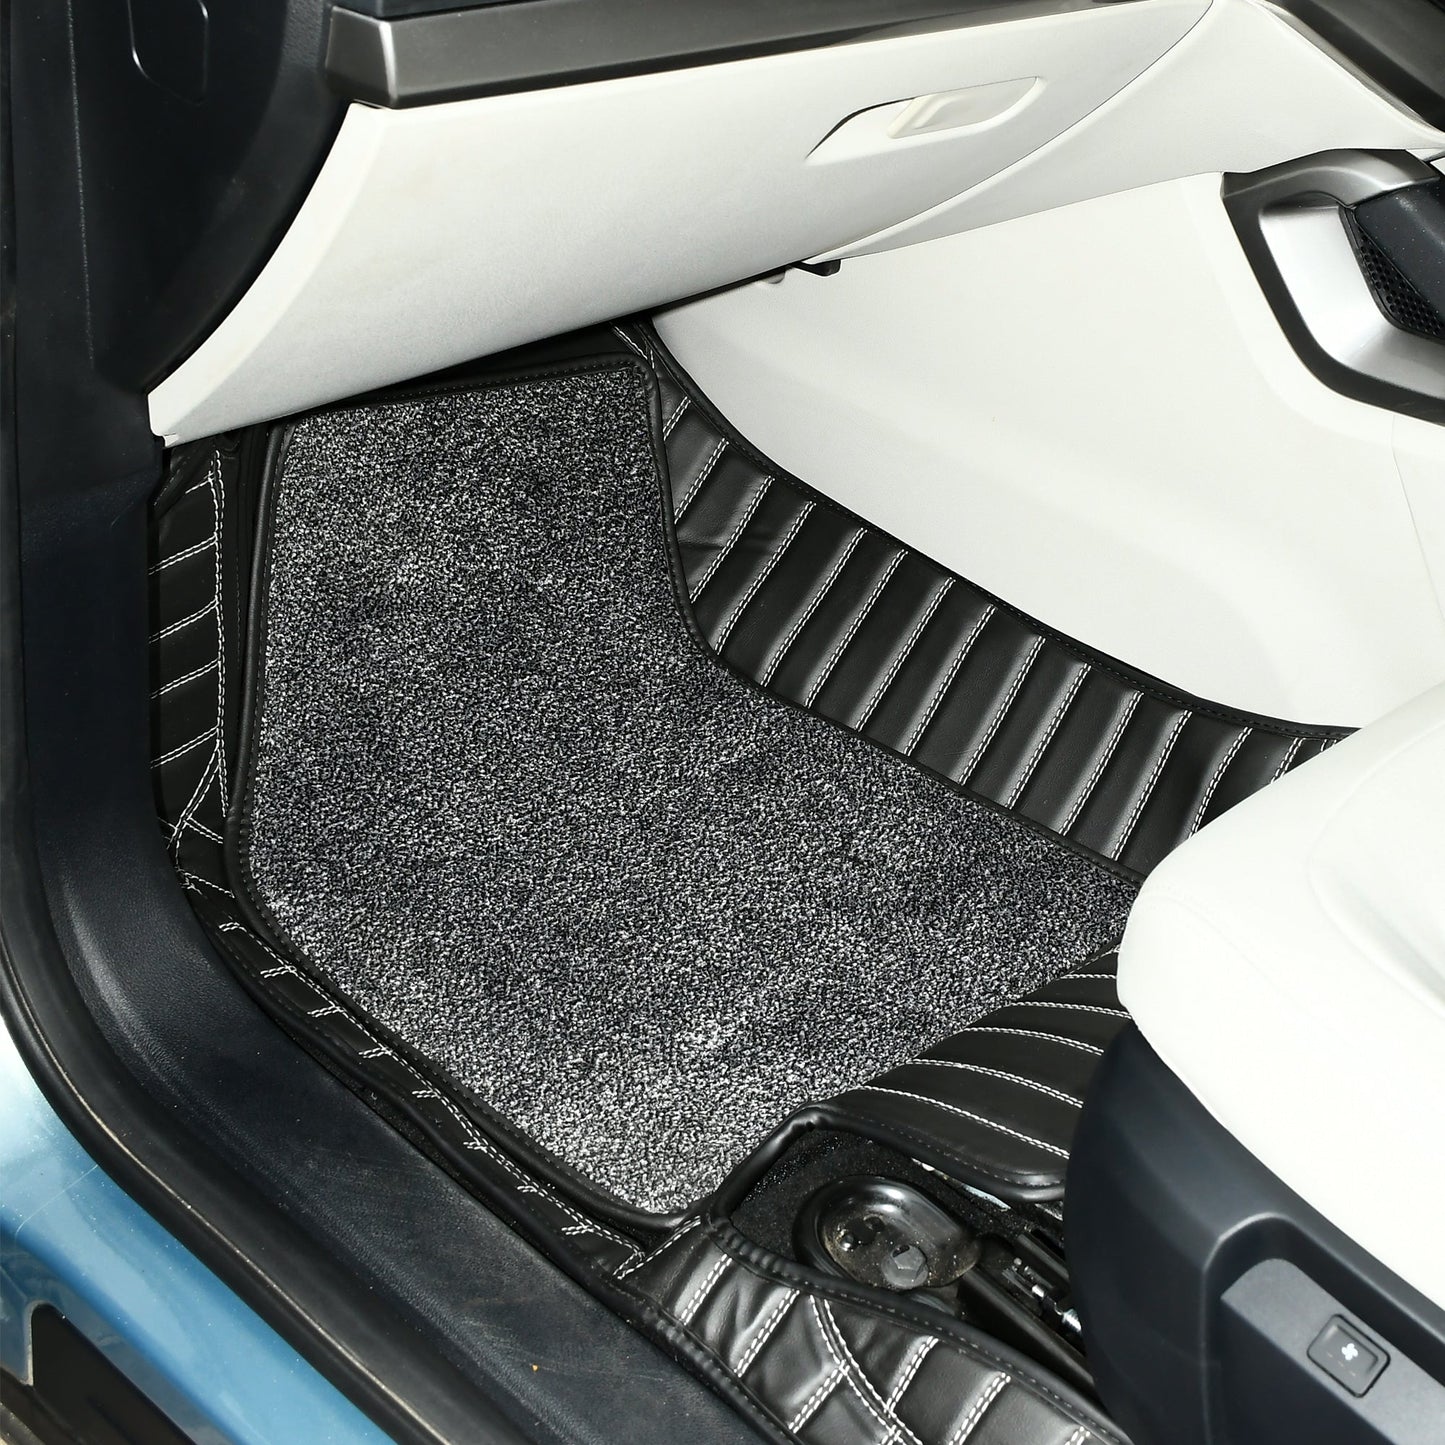 
                  
                    Top Gear 4D Pristine Topaz Car Mats for Tata Safari II 7-Crown Black(UM-Pepper)-7D MATS-TOP GEAR-CARPLUS
                  
                